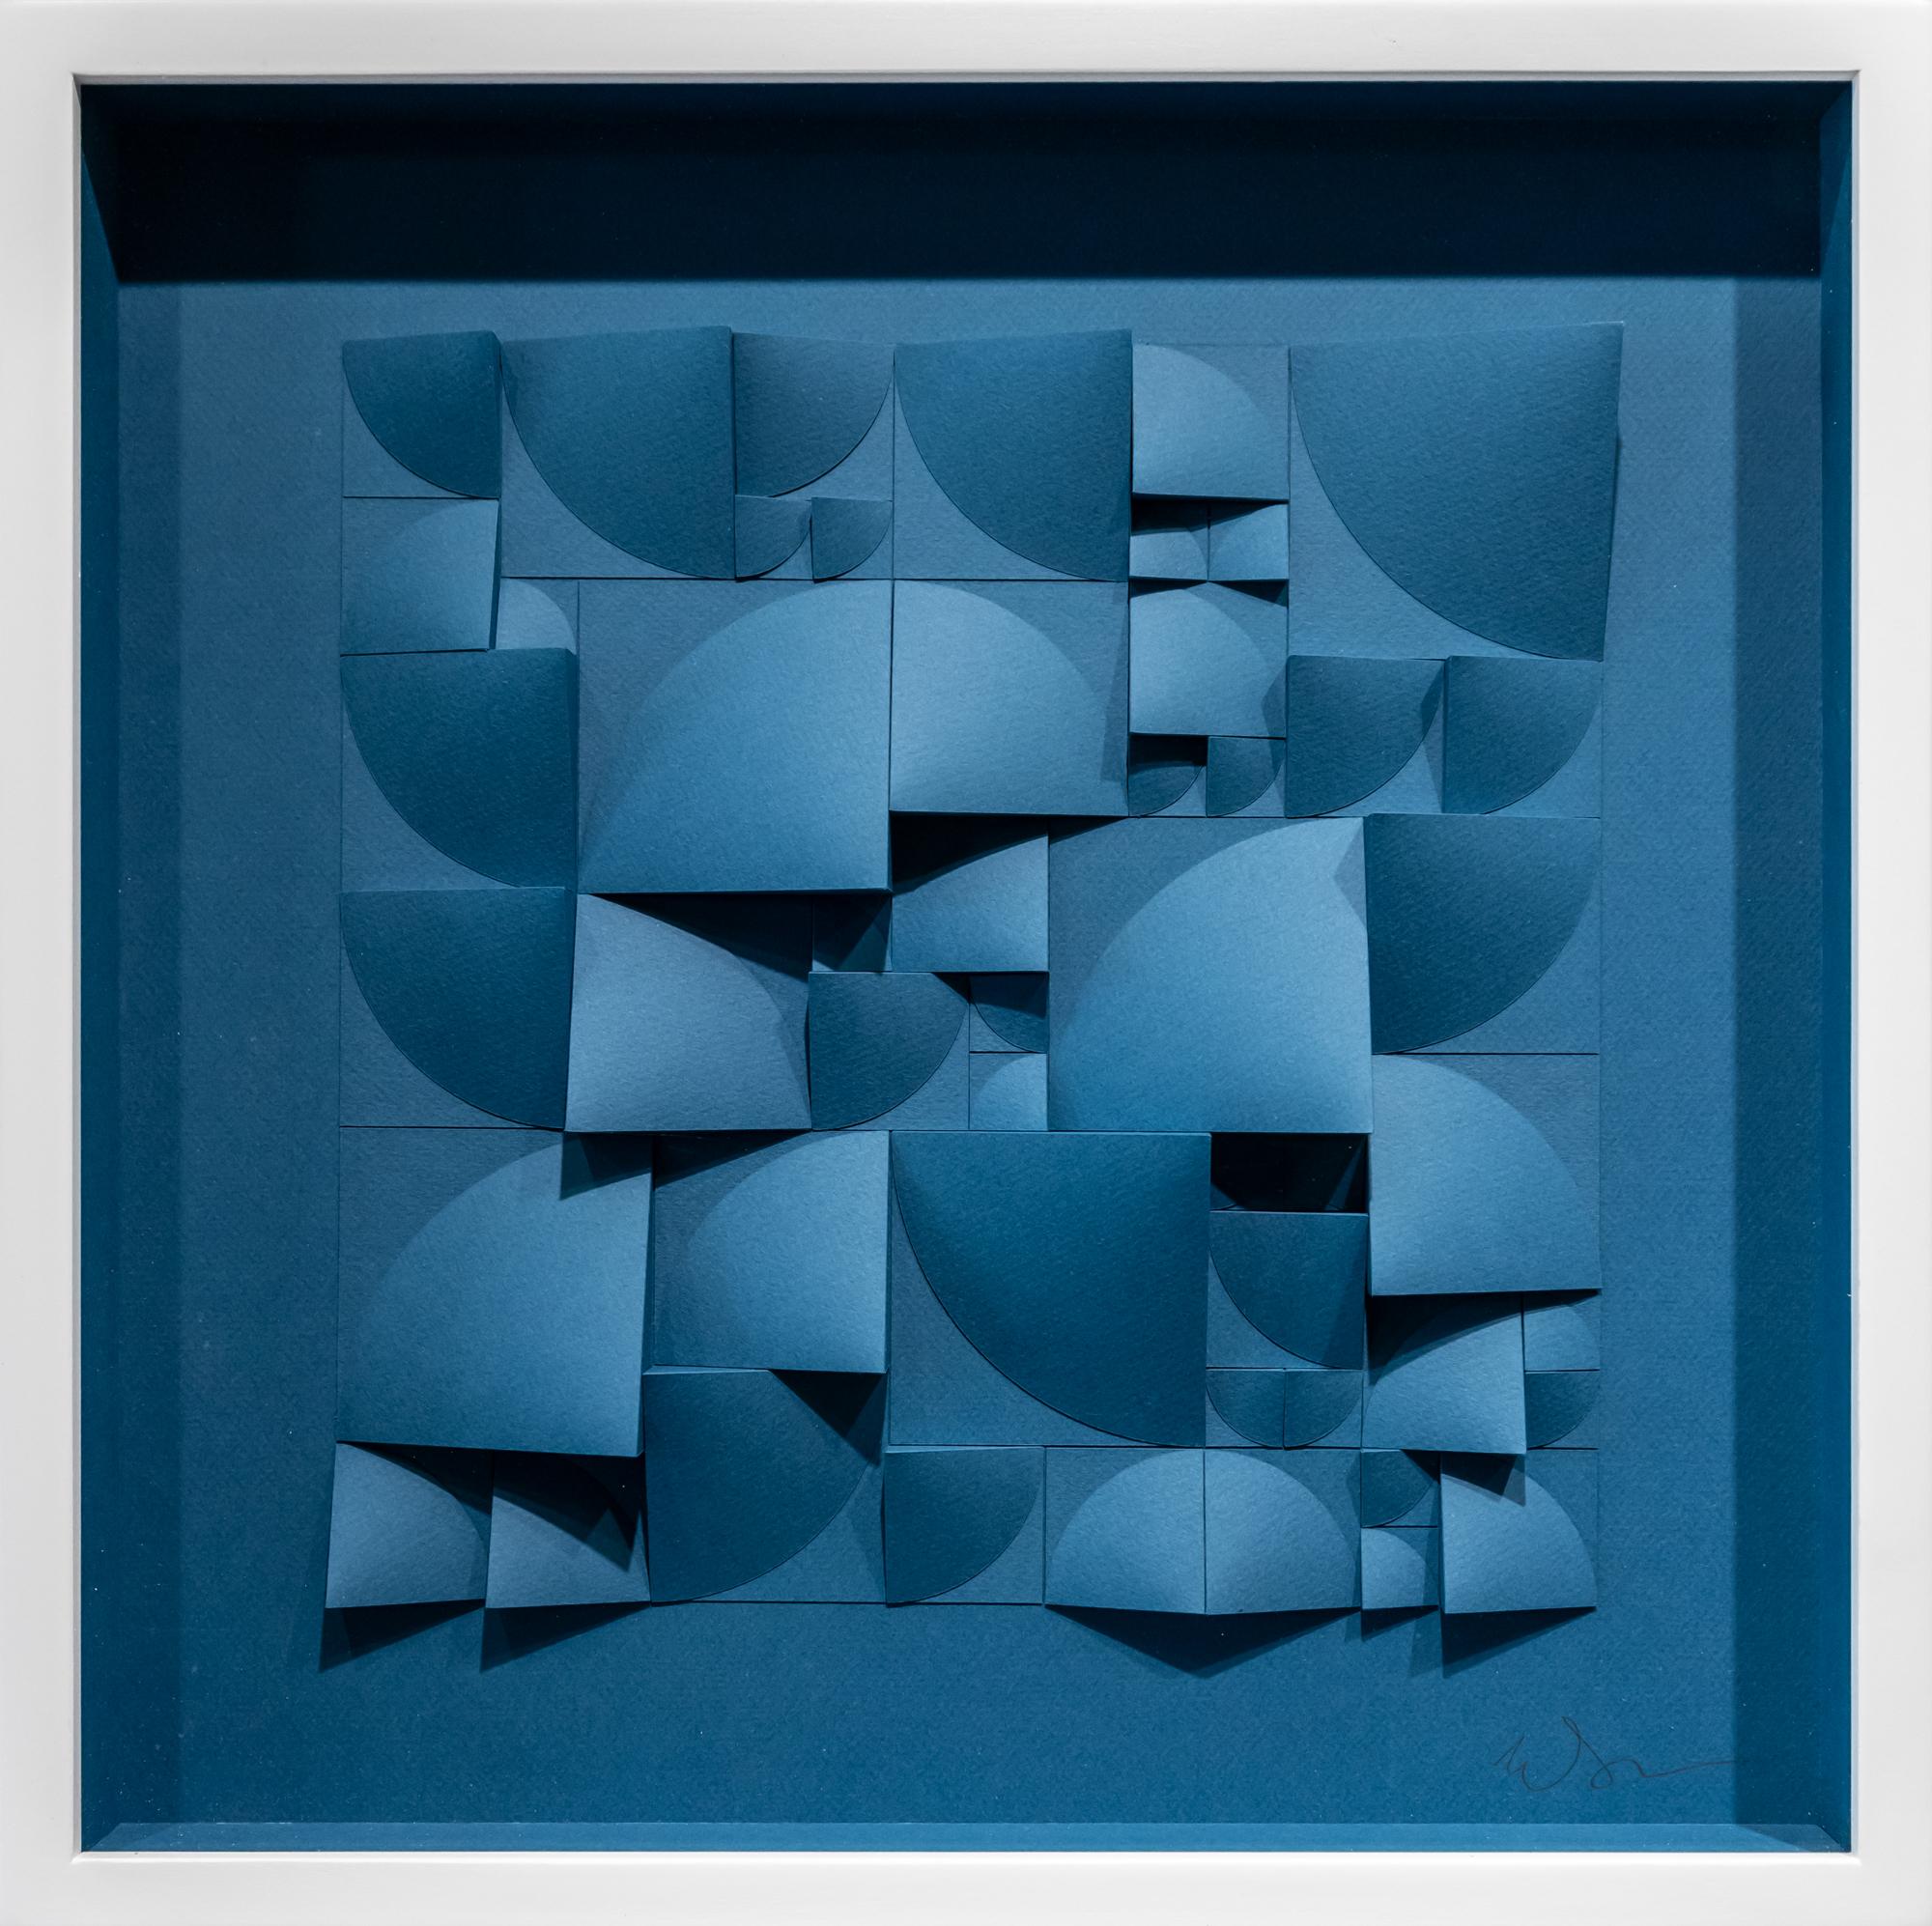 Matt Shlian Abstract Sculpture - Omoplata 21 in Petrol Blue